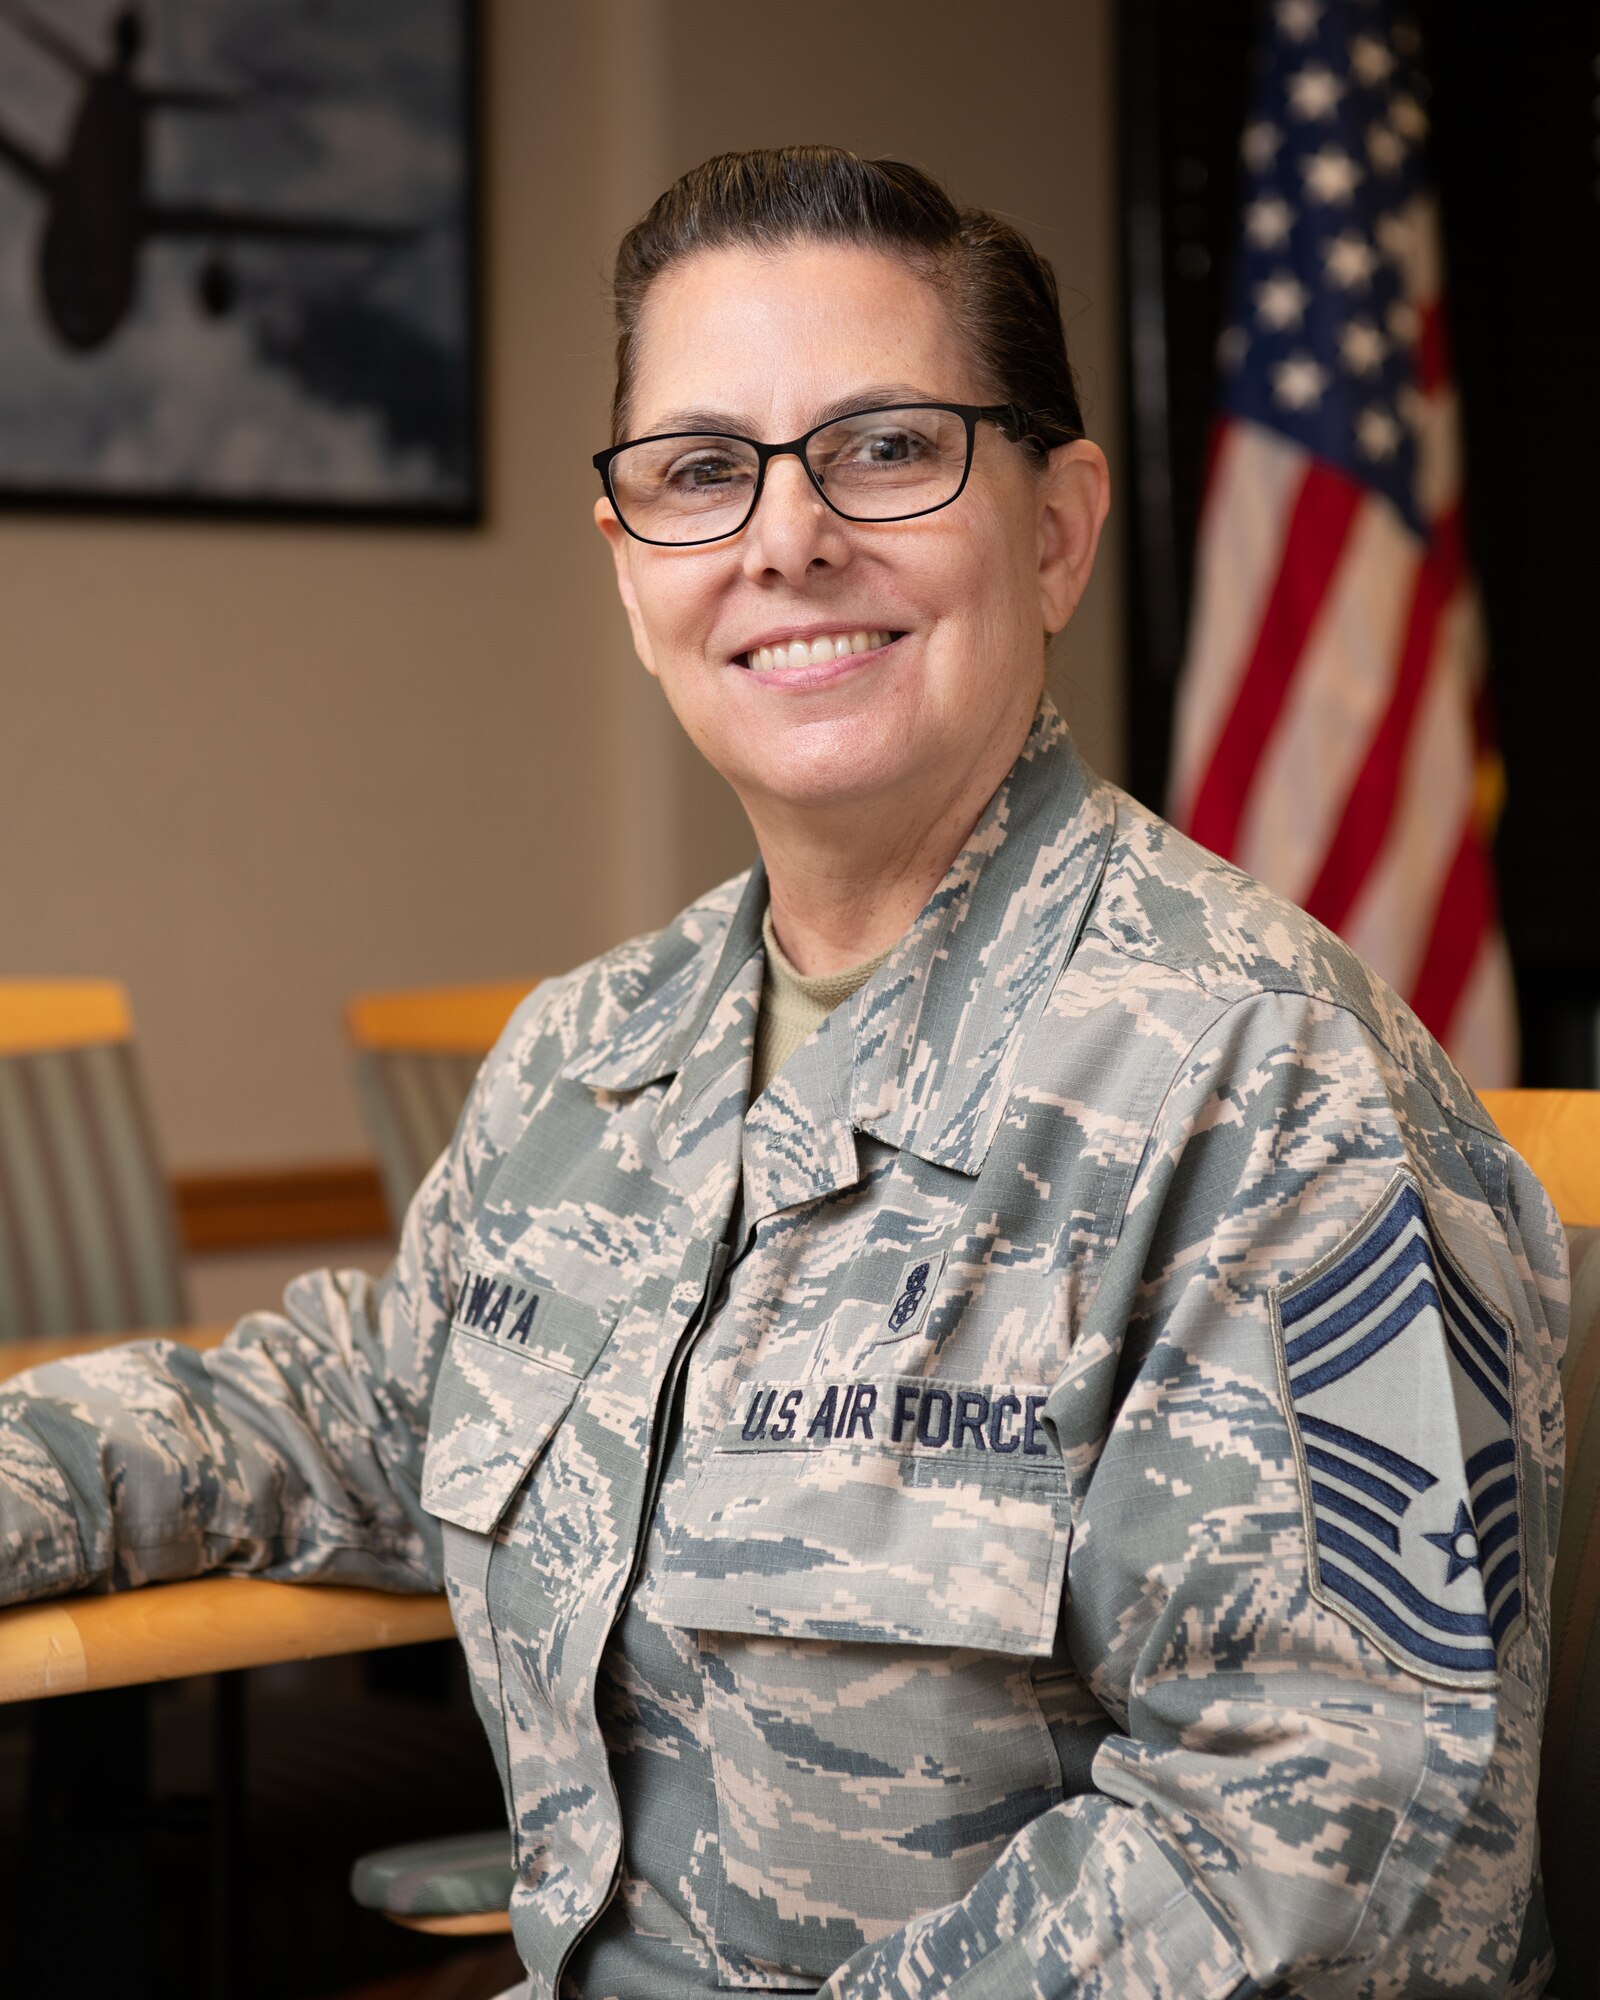 Chief Master Sgt. Patricia Kawa’a, 349th Medical Group